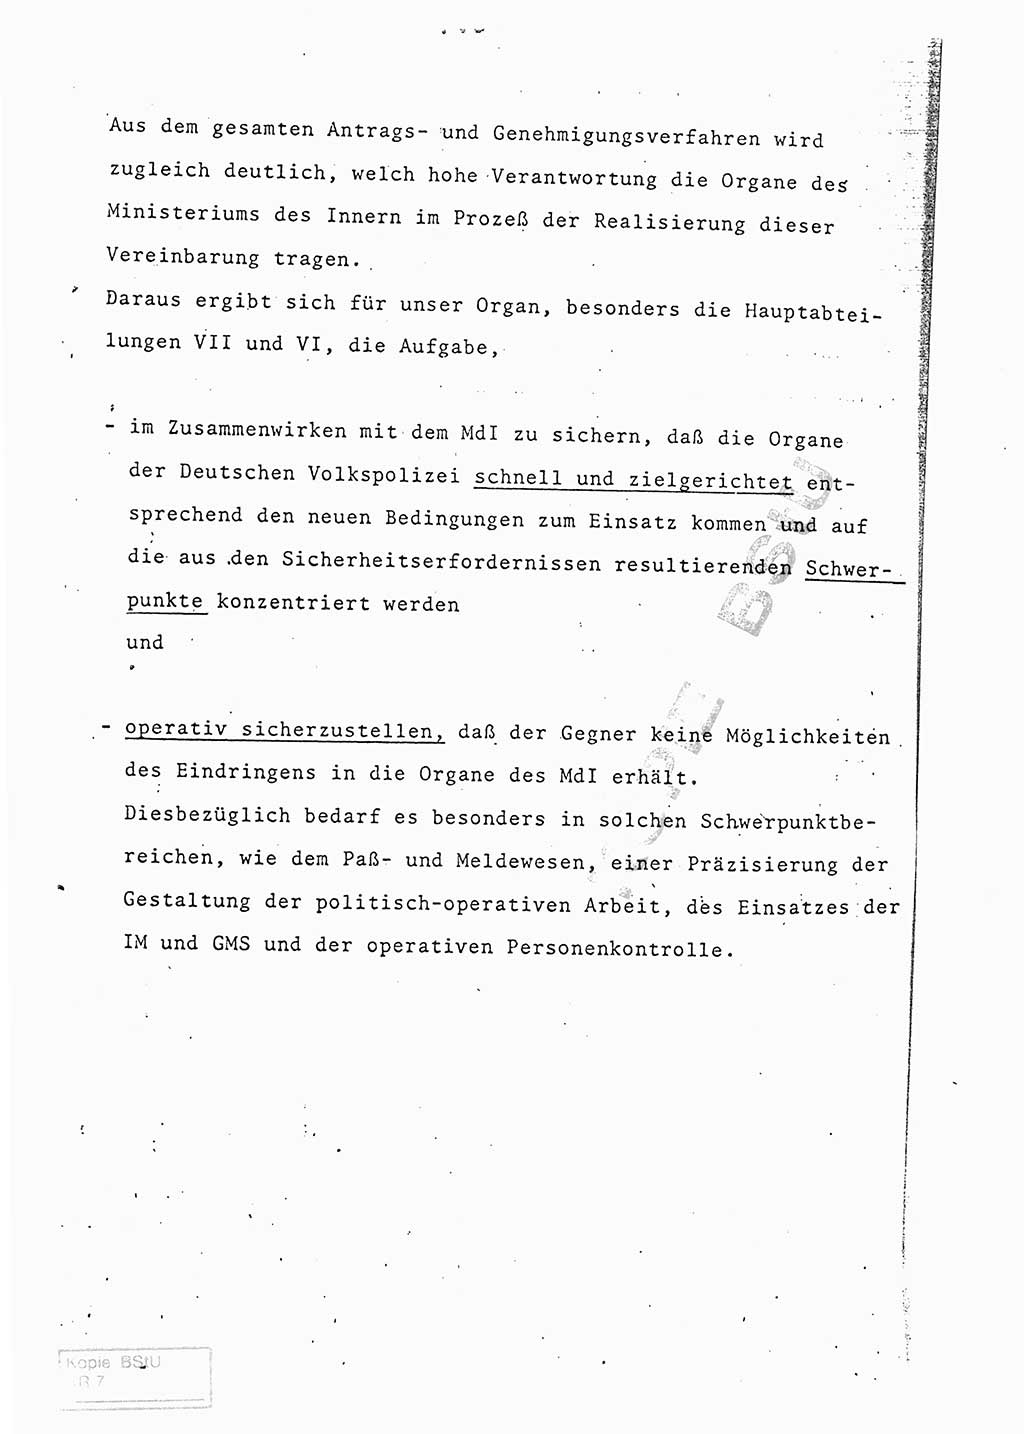 Referat (Entwurf) des Genossen Minister (Generaloberst Erich Mielke) auf der Dienstkonferenz 1972, Ministerium für Staatssicherheit (MfS) [Deutsche Demokratische Republik (DDR)], Der Minister, Geheime Verschlußsache (GVS) 008-150/72, Berlin 25.2.1972, Seite 195 (Ref. Entw. DK MfS DDR Min. GVS 008-150/72 1972, S. 195)